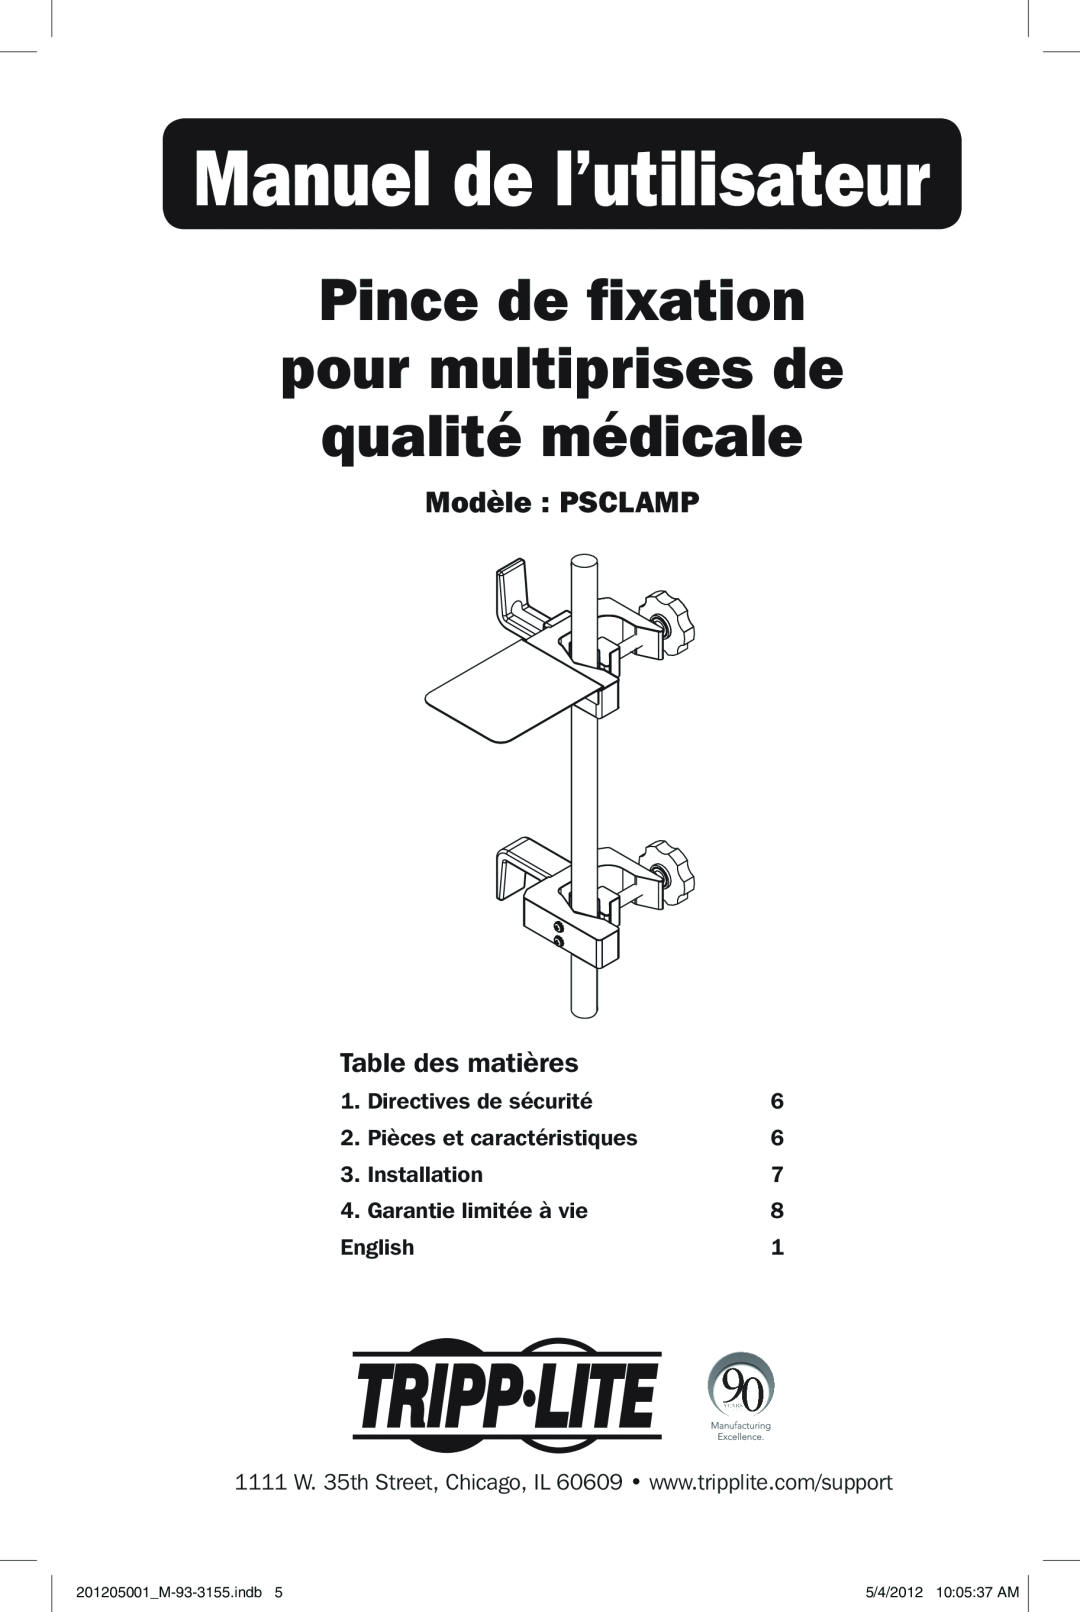 Tripp Lite owner manual Manuel de l’utilisateur, Pince de fixation pour multiprises de qualité médicale, Modèle PSCLAMP 